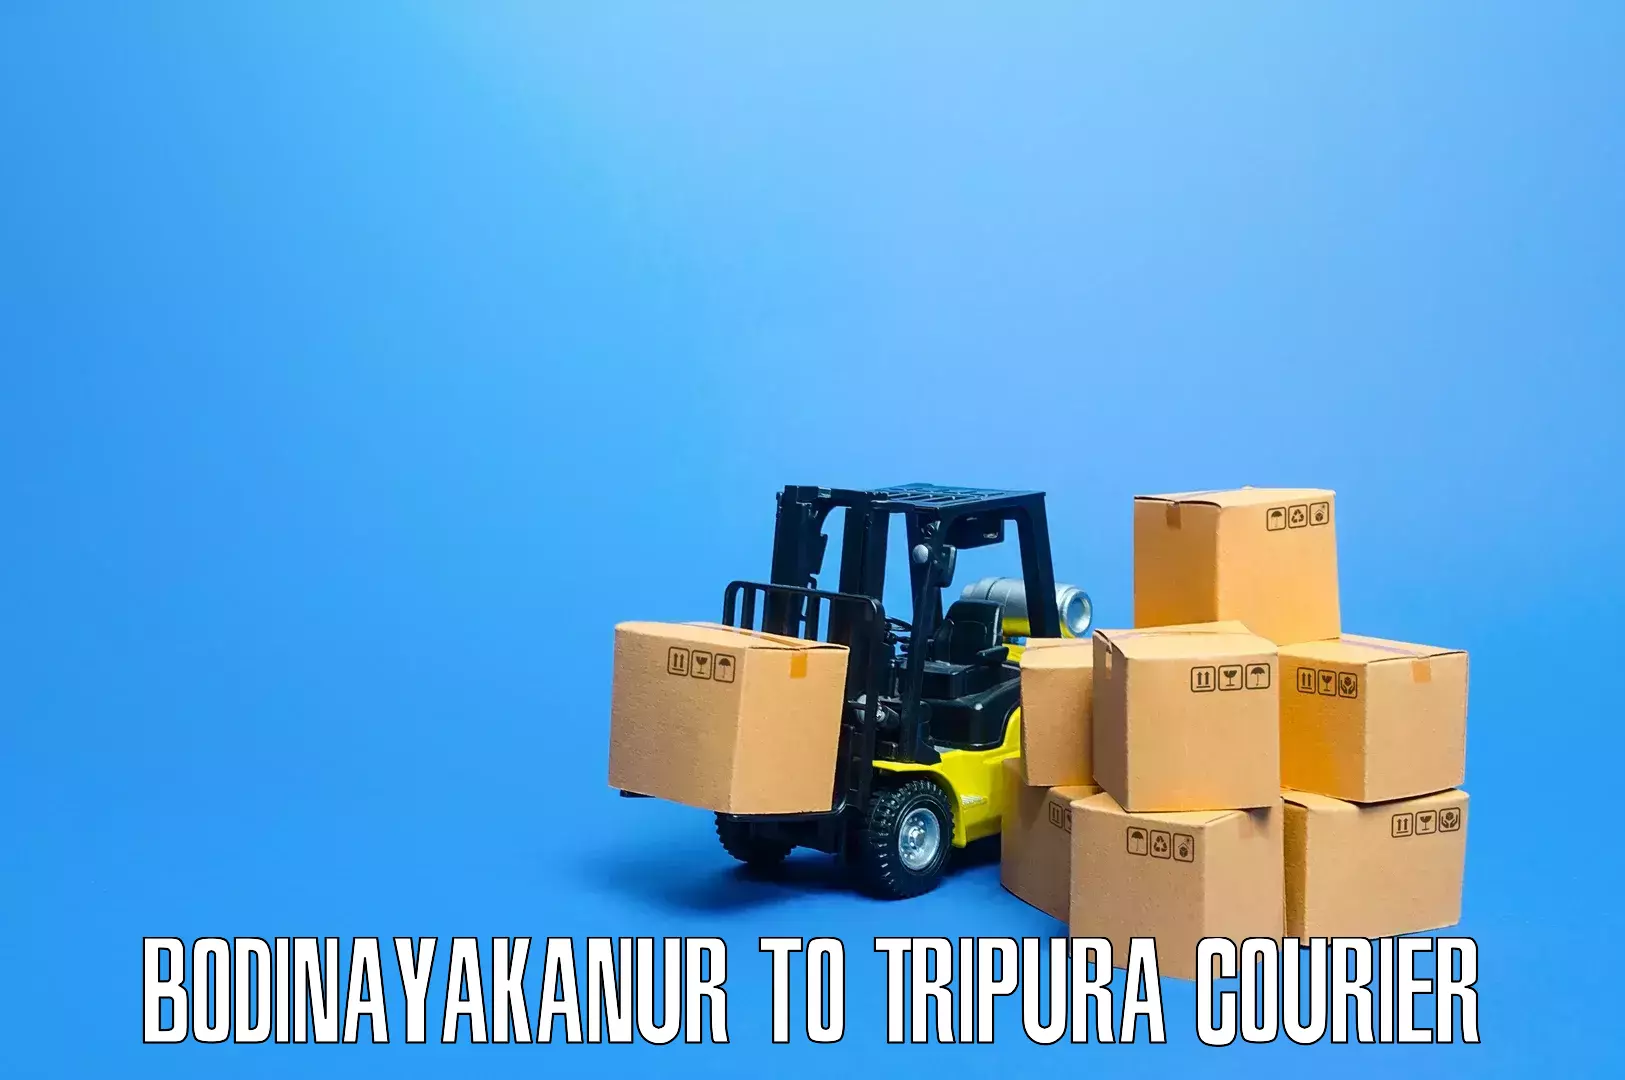 Furniture moving experts in Bodinayakanur to Tripura